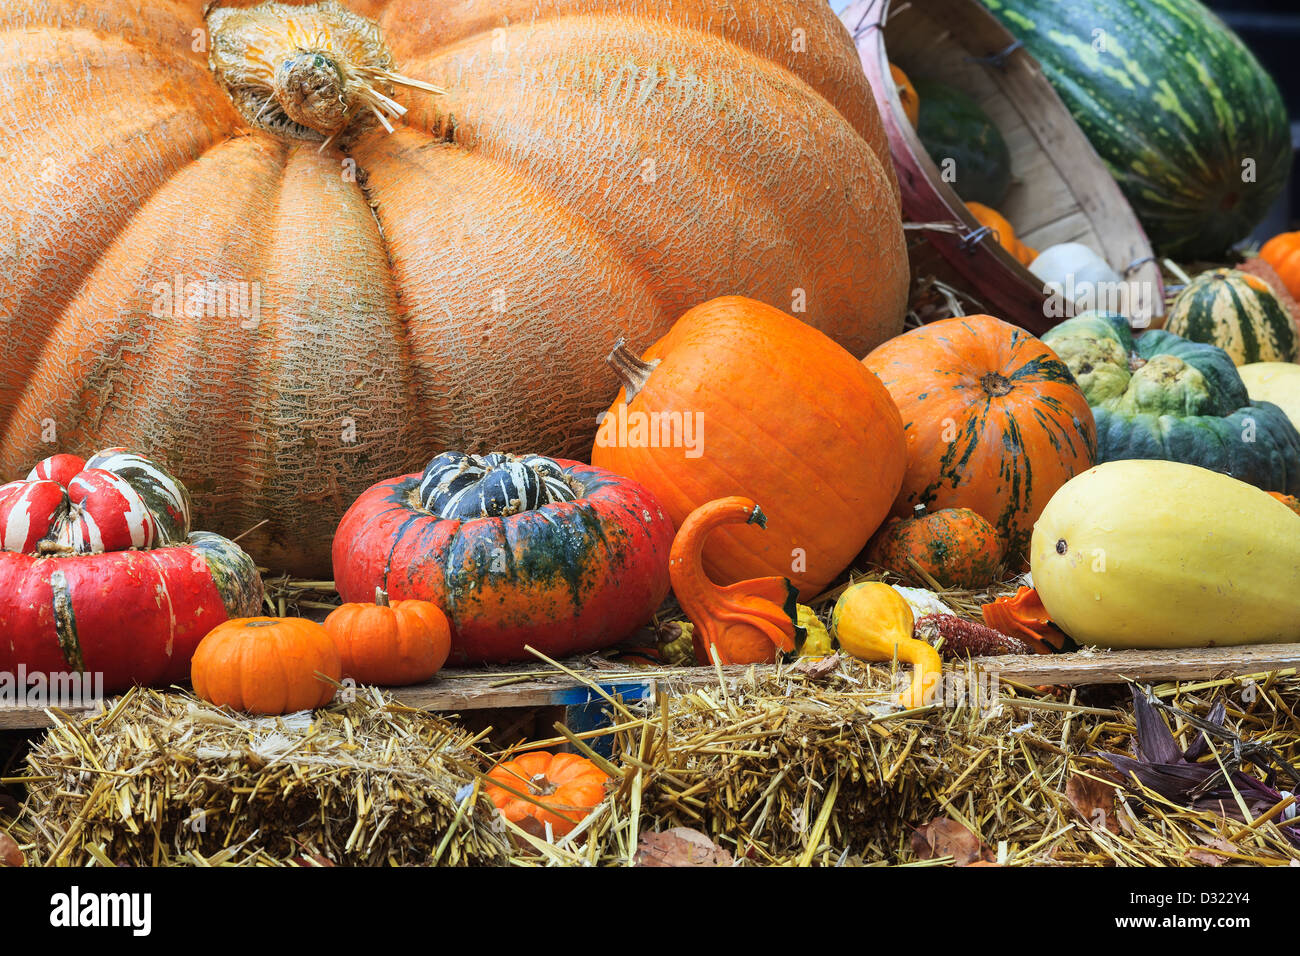 Visualización del Día de Acción de Gracias, la cosecha de otoño de calabazas y pista de squash. Foto de stock